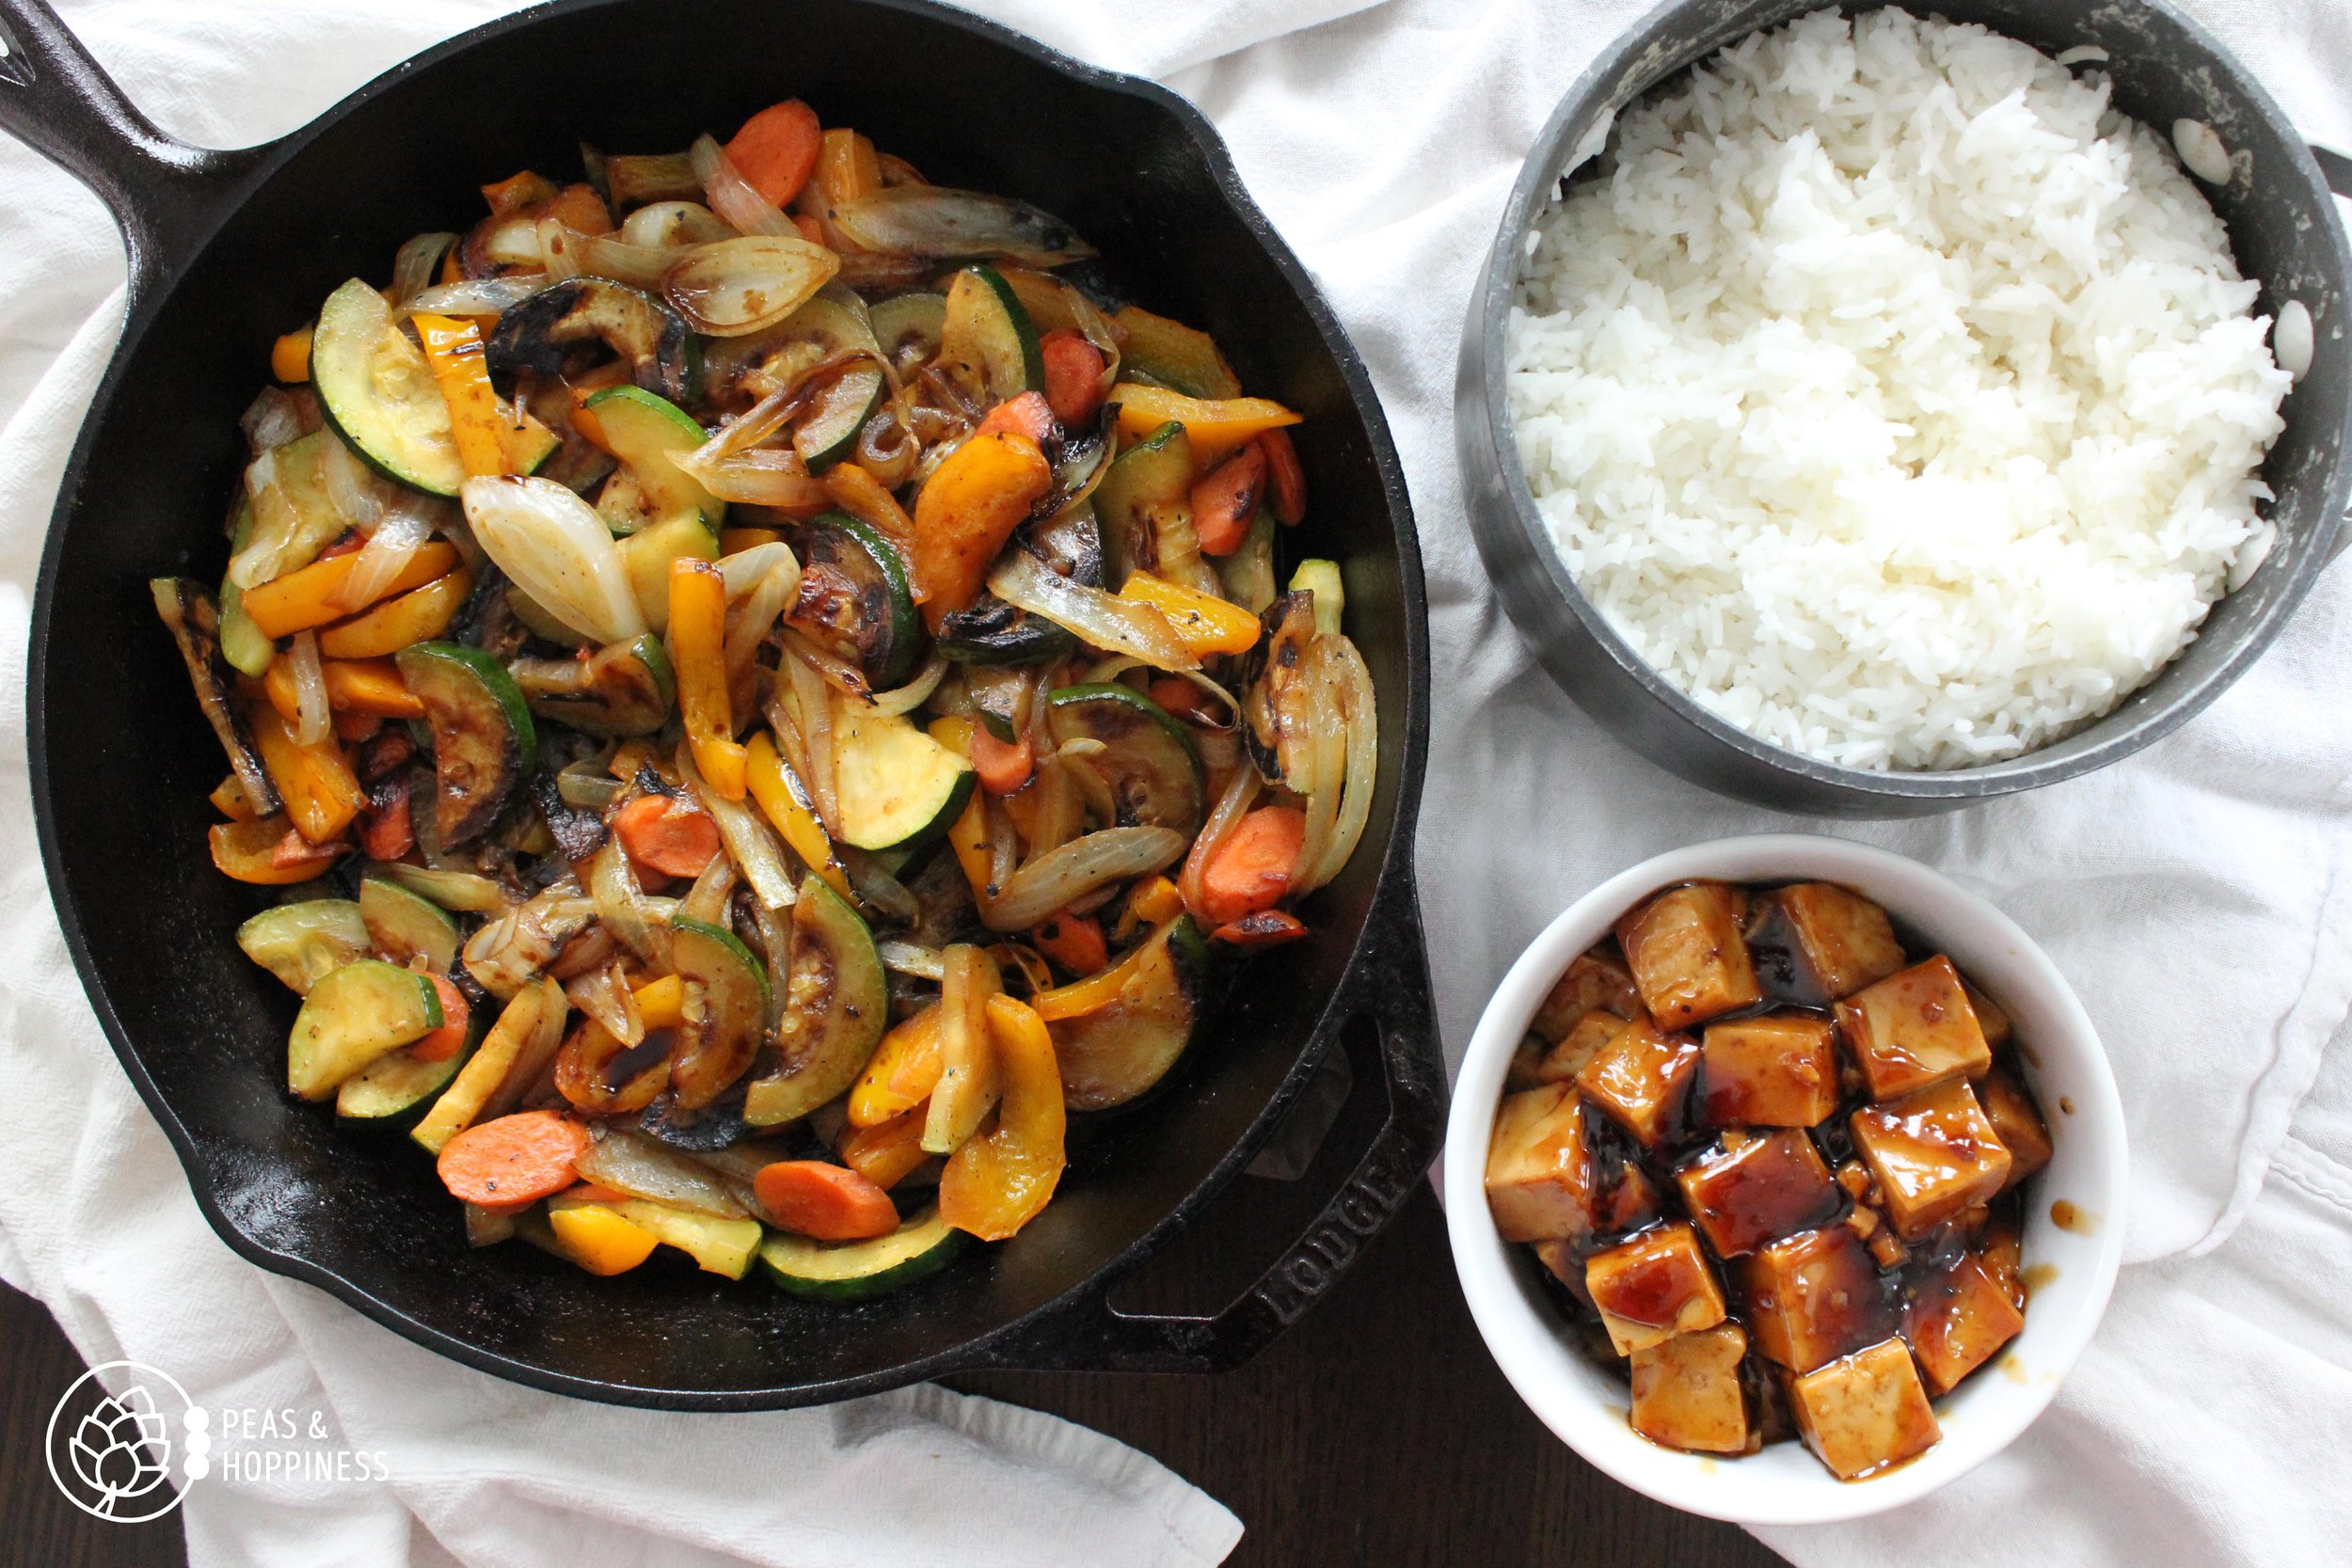 Recipe for Easy Vegan Teriyaki Tofu and Vegetable Bowls